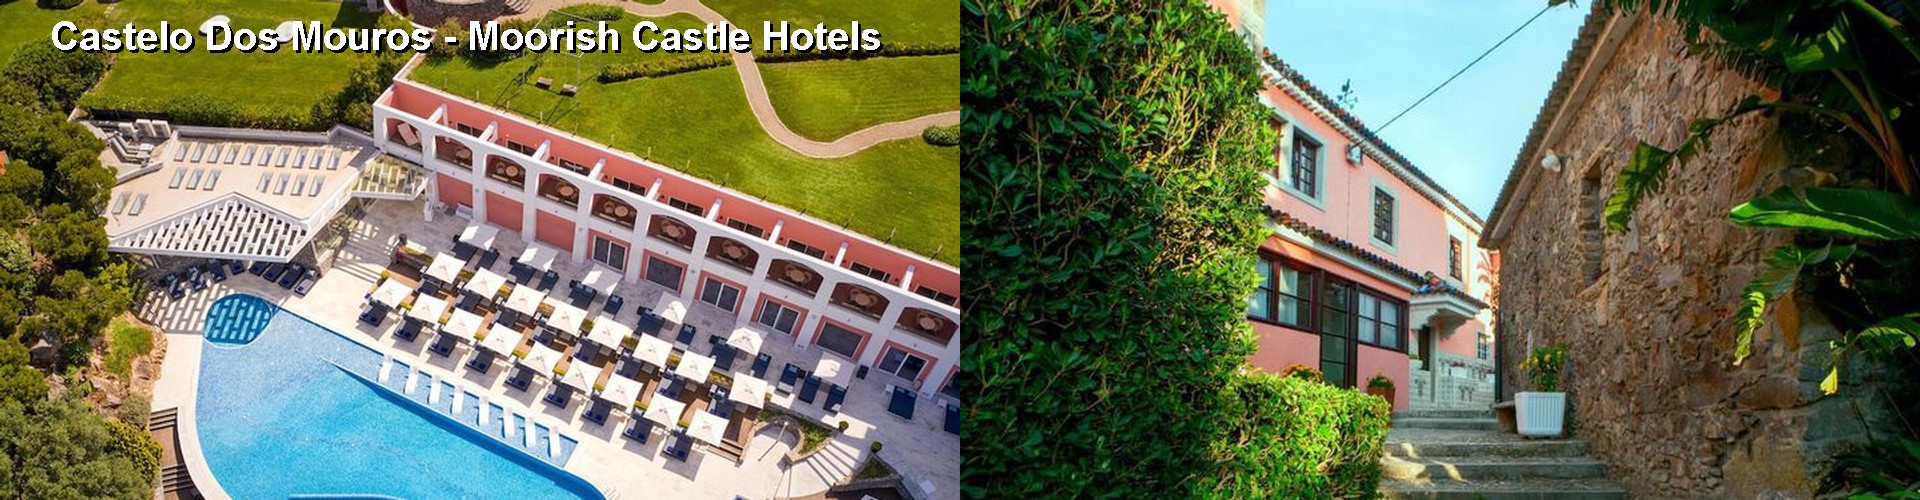 5 Best Hotels near Castelo Dos Mouros - Moorish Castle